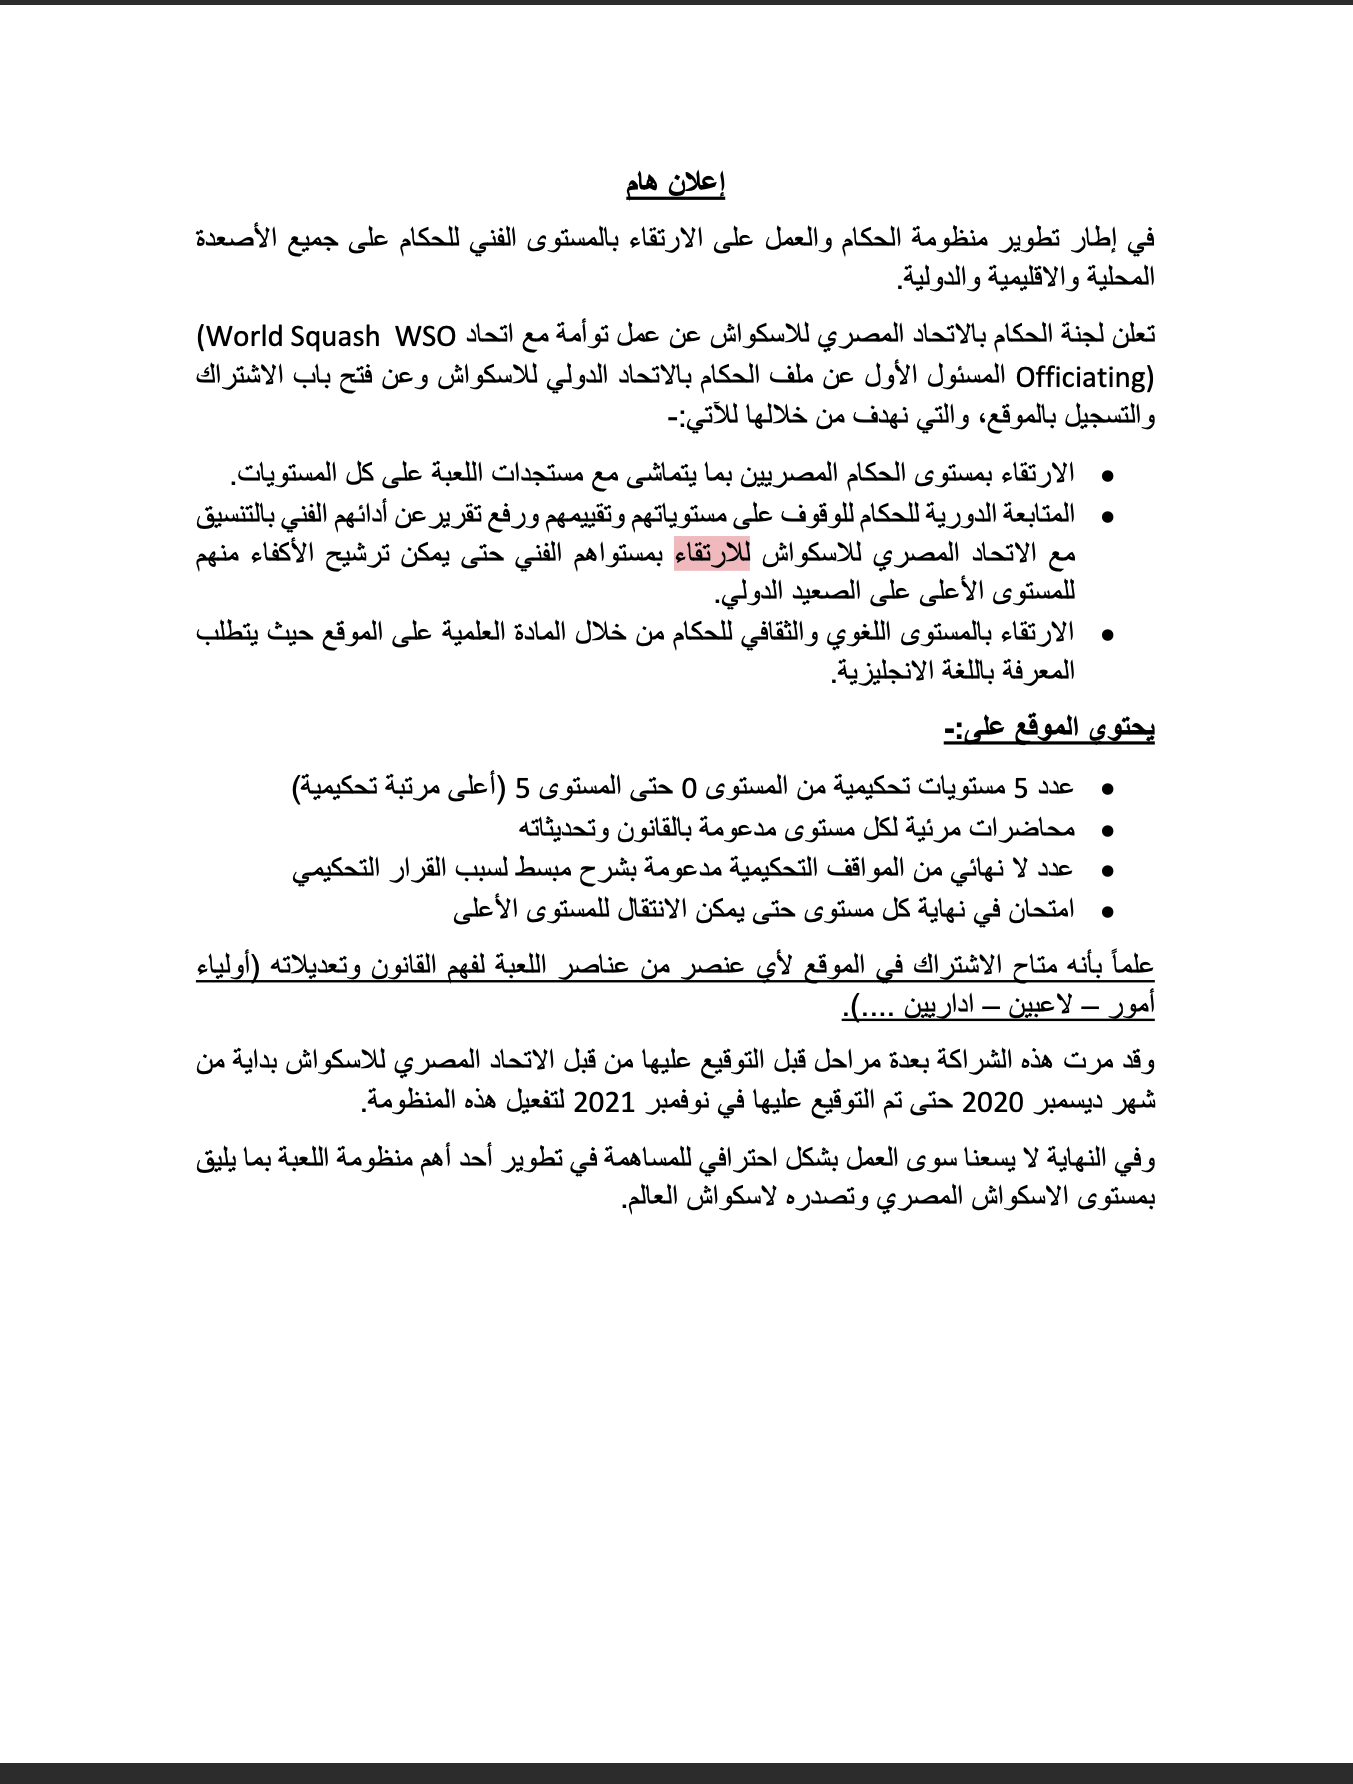 الاتحاد المصري للاسكواش عن عمل توأمة مع اتحاد World Squash WSO(